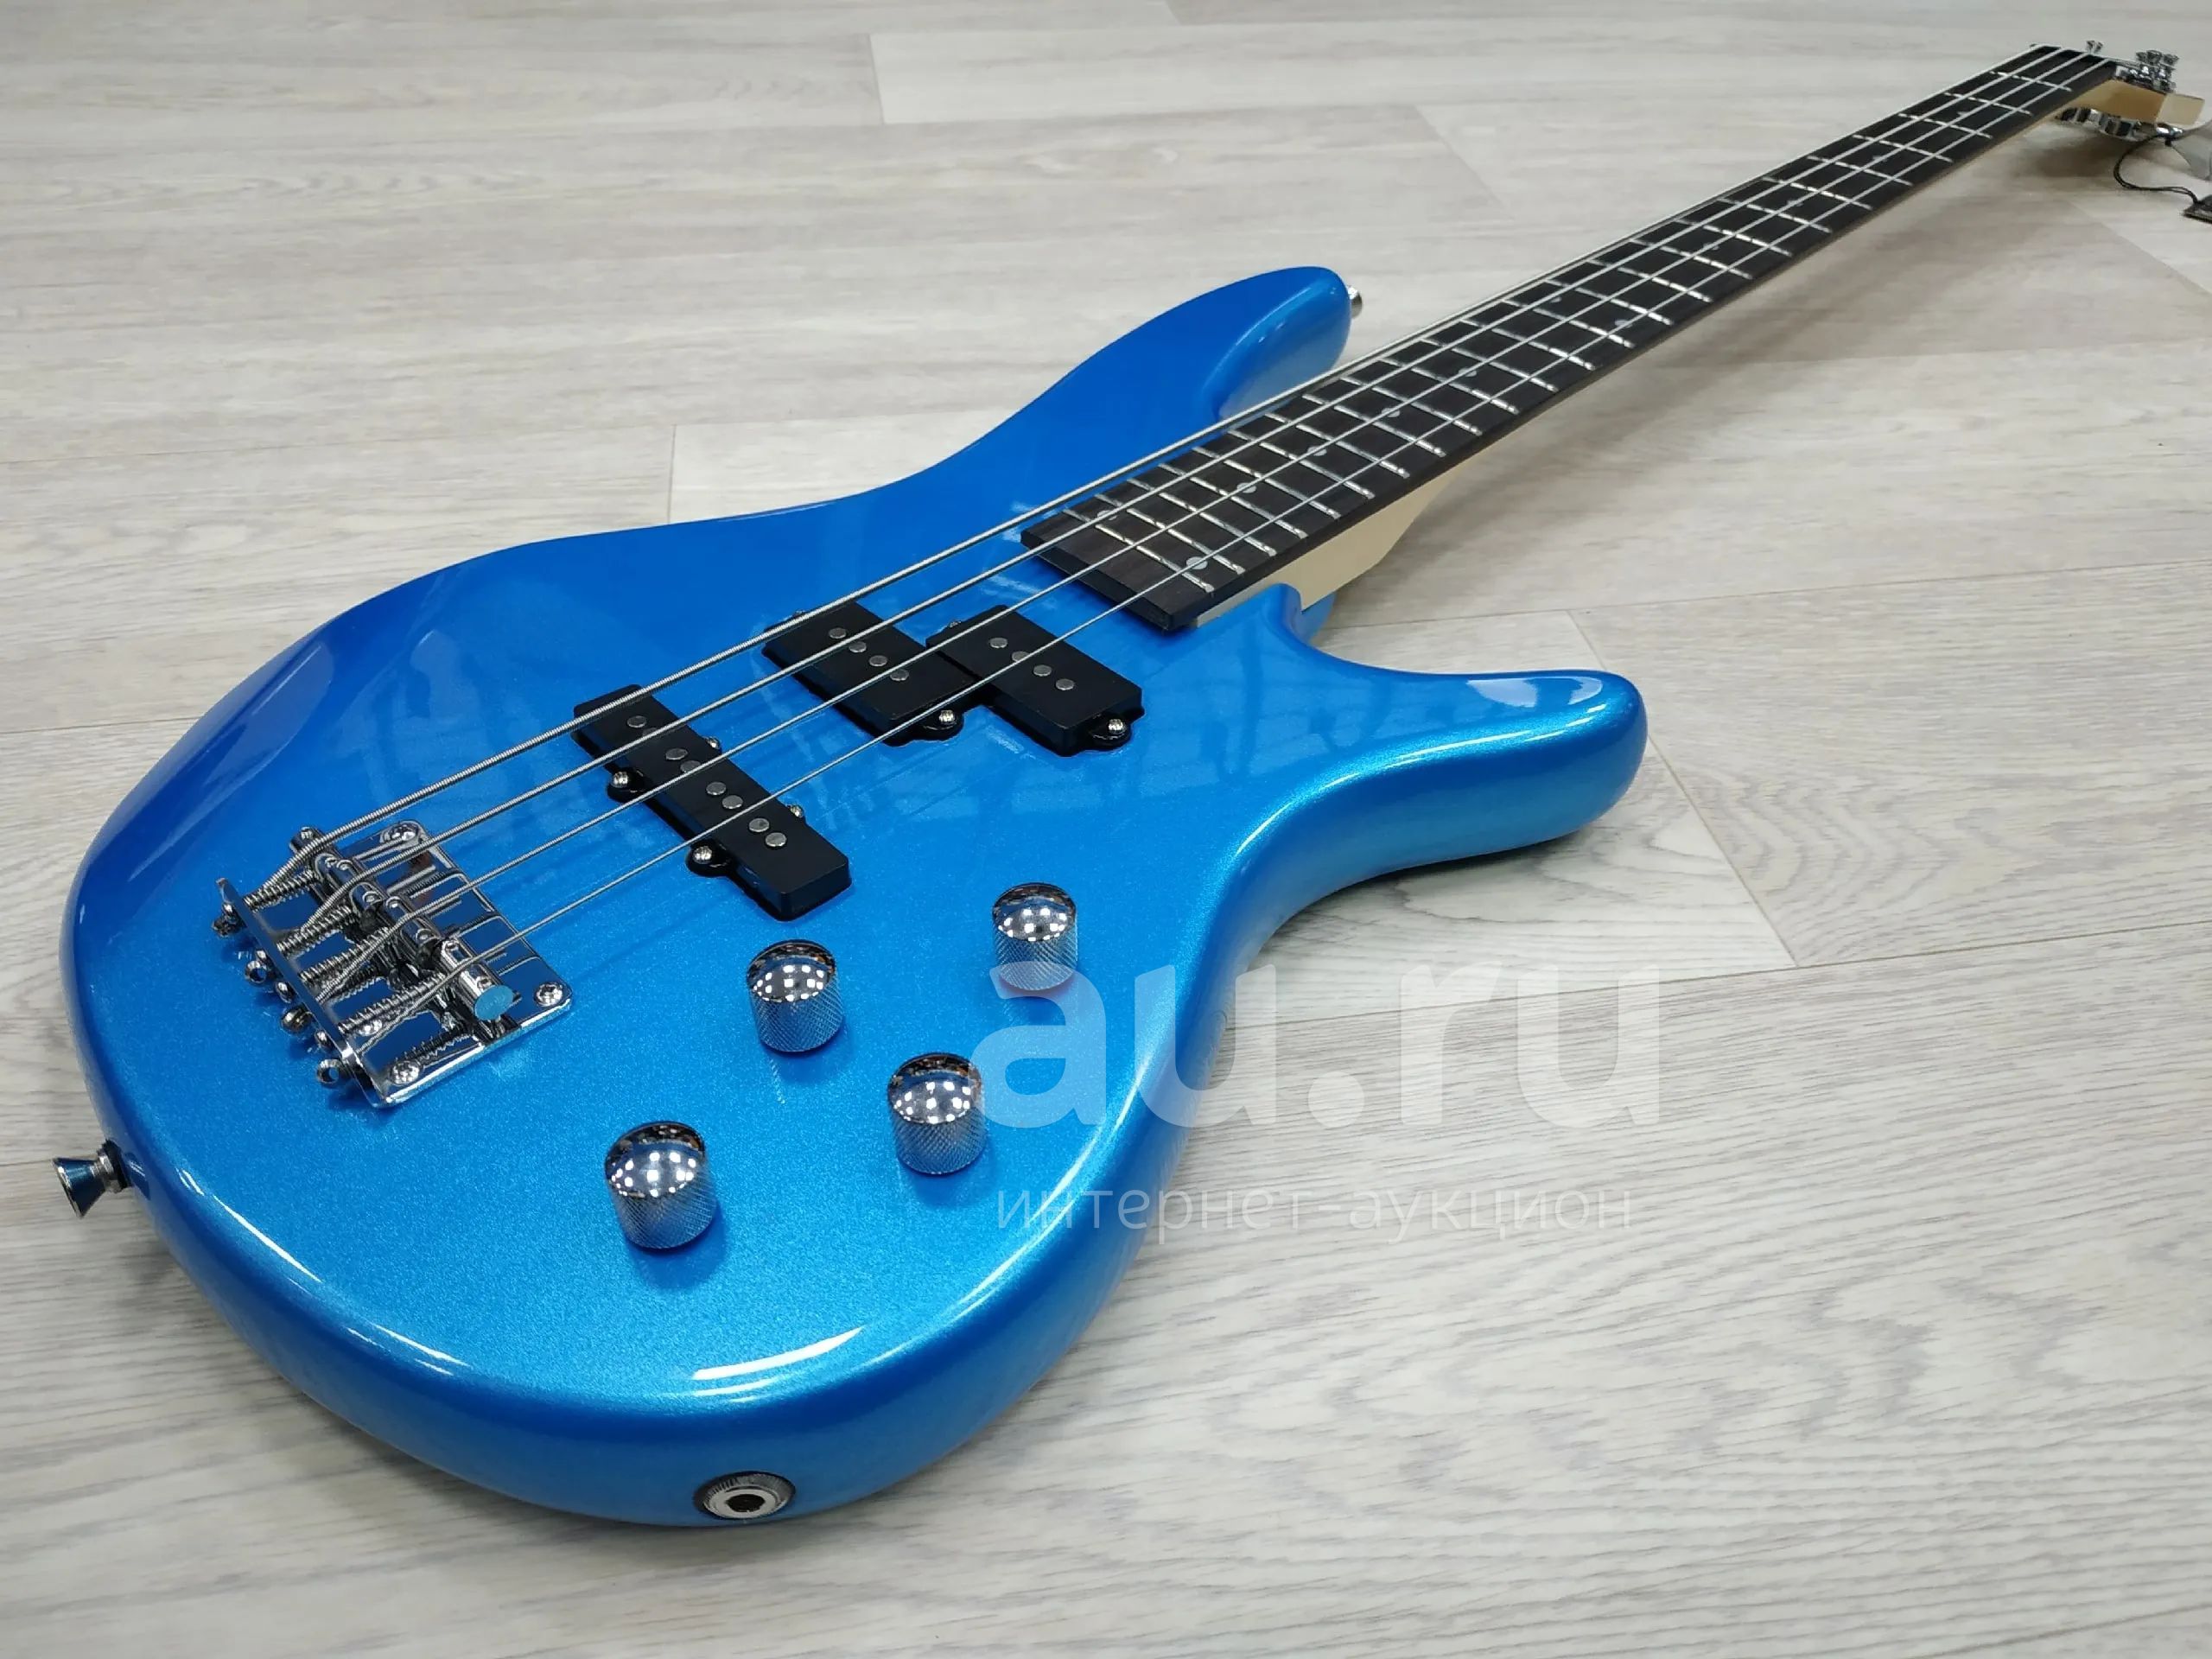 Бас-гитара Sqoe sq-IB-4 Red. Sqoe setl300 Blue электрогитара. Sqoe setl300 MBK электрогитара матовая. Sqoe setl300 Sky электрогитара. Bass 33